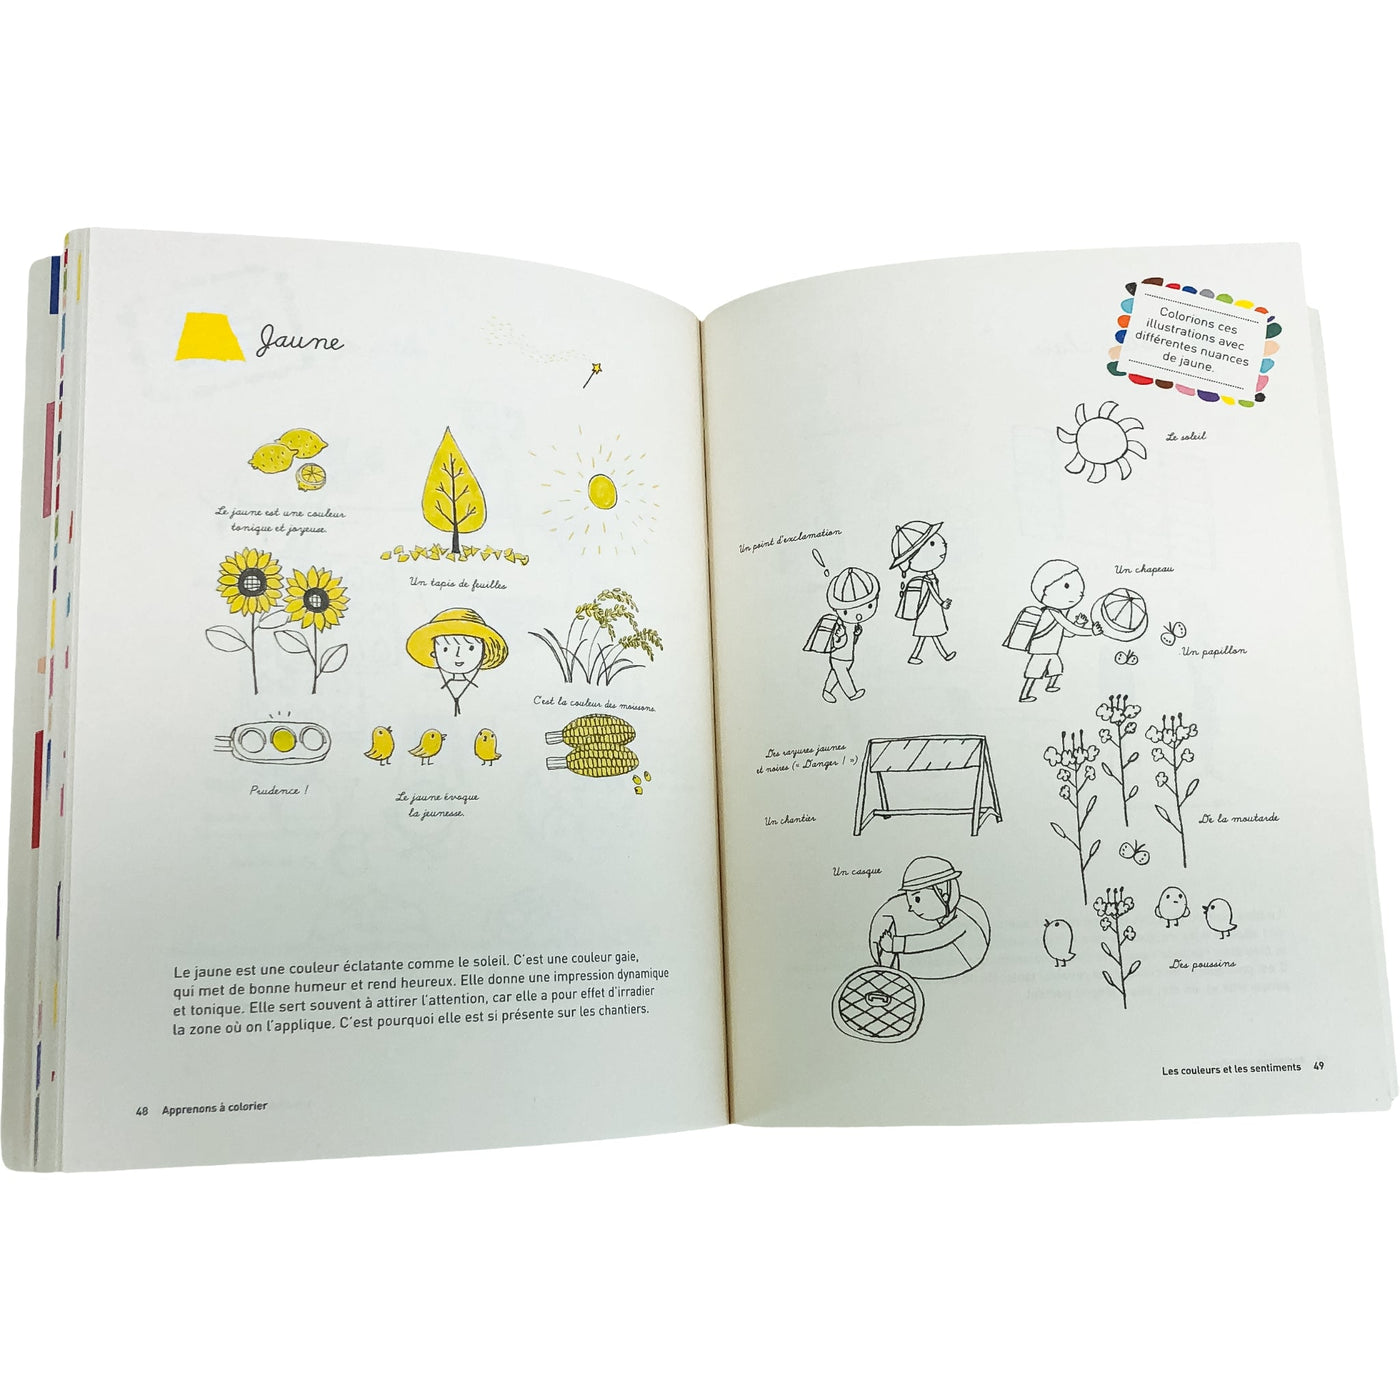 Livre documentaire "Livre Apprenons à colorier" de seconde main pour enfant à partir de 3 ans - photo alternative_1